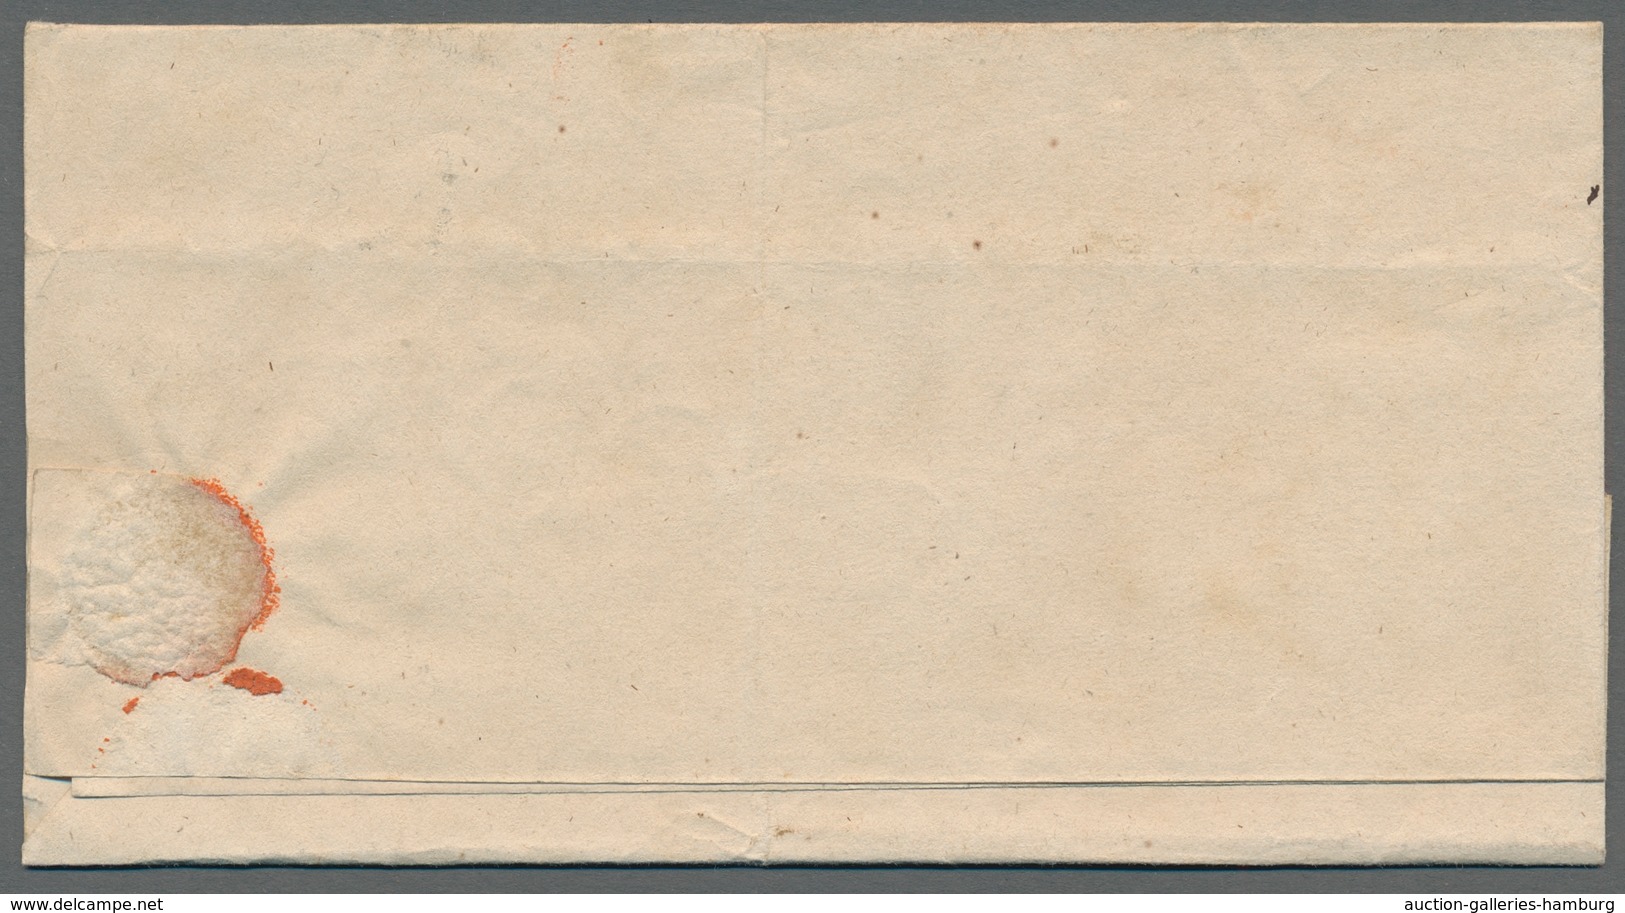 Bayern - Ganzsachen: 1872 Posten von 31 Briefen, Karten, Ganzsachen verschiedener Gebiete (Bayern, P